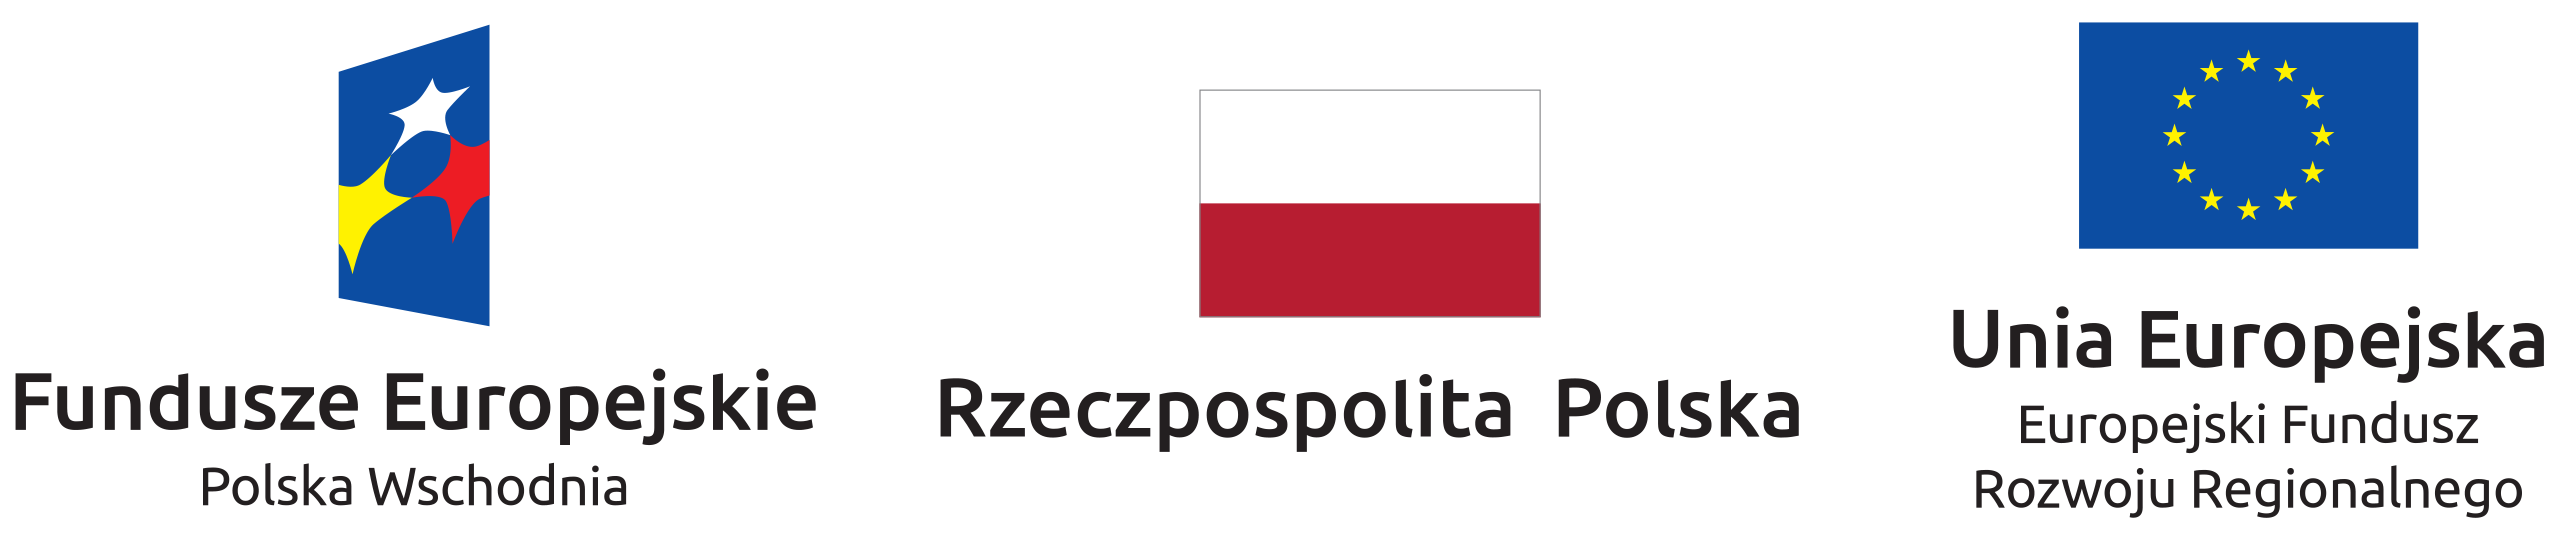 Fundusze Europejskie - Polska Wschodnia